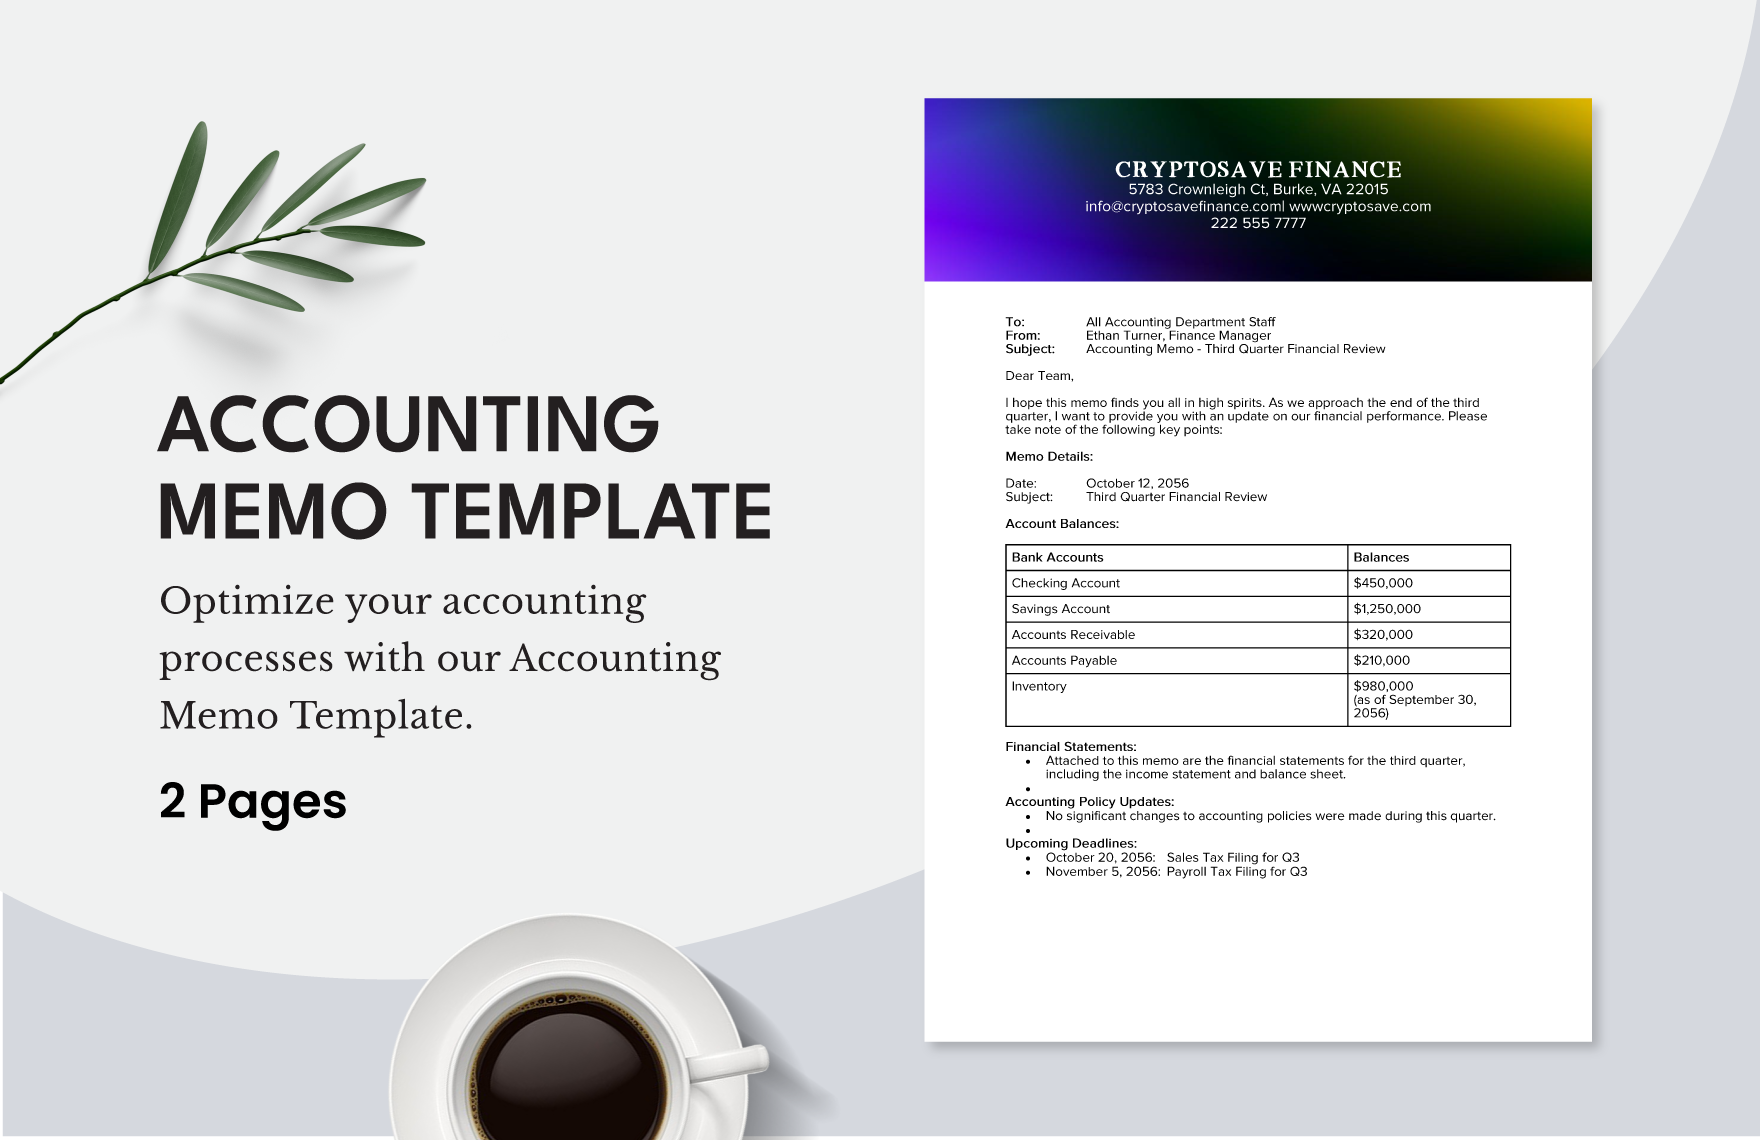 Sample Accounting Memo Template